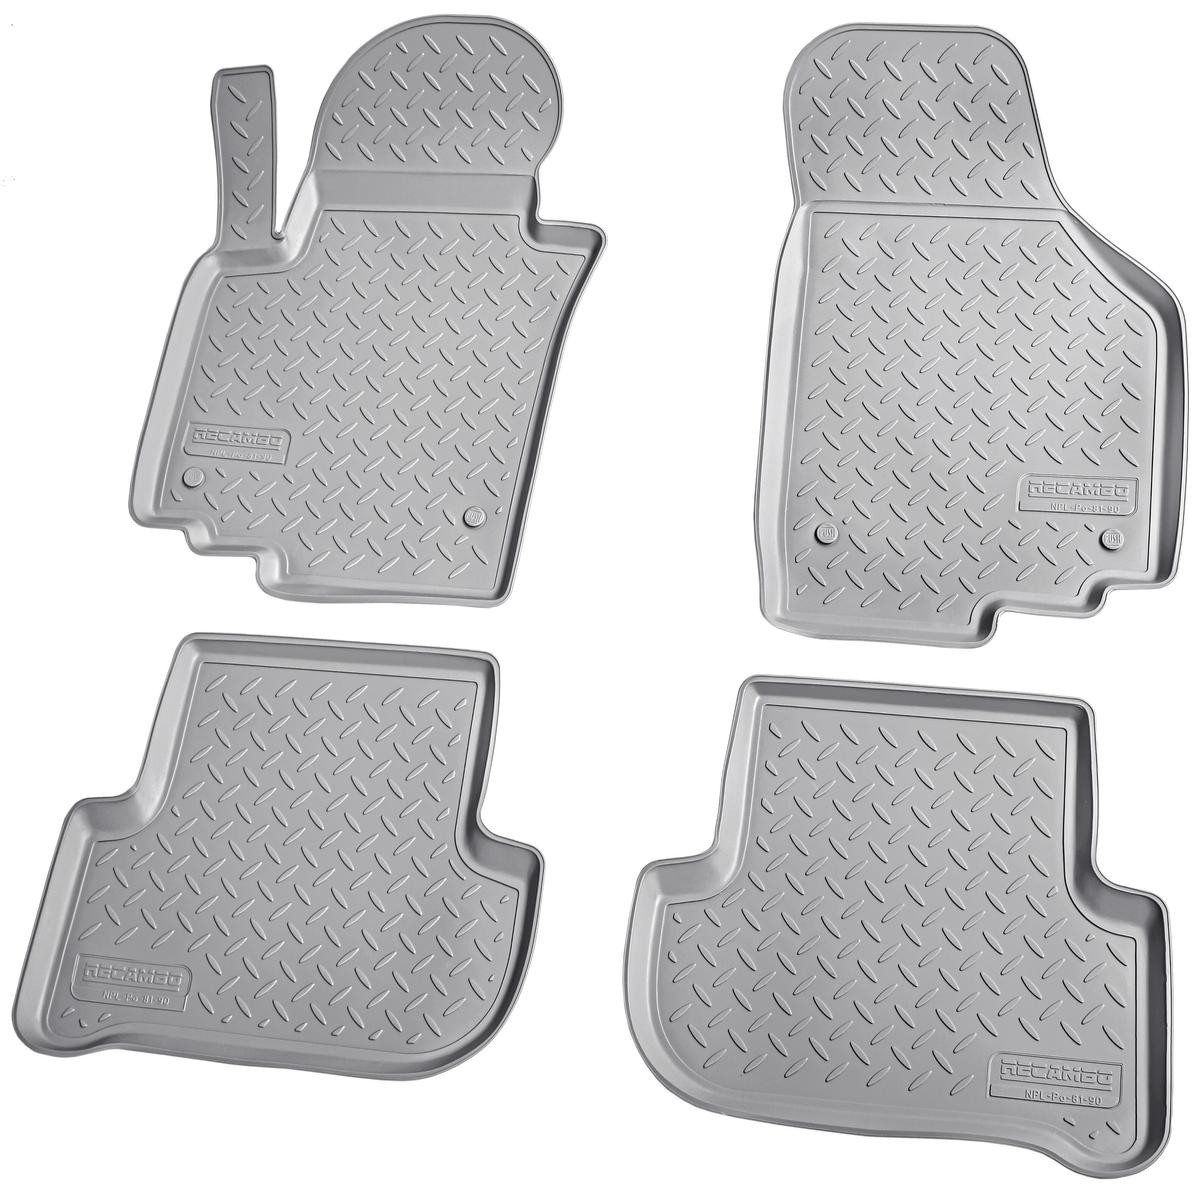 Fußmatten für Seat Gummi Original und Textil kaufen bei günstige Leon 1P und Preise - Qualität AUTODOC